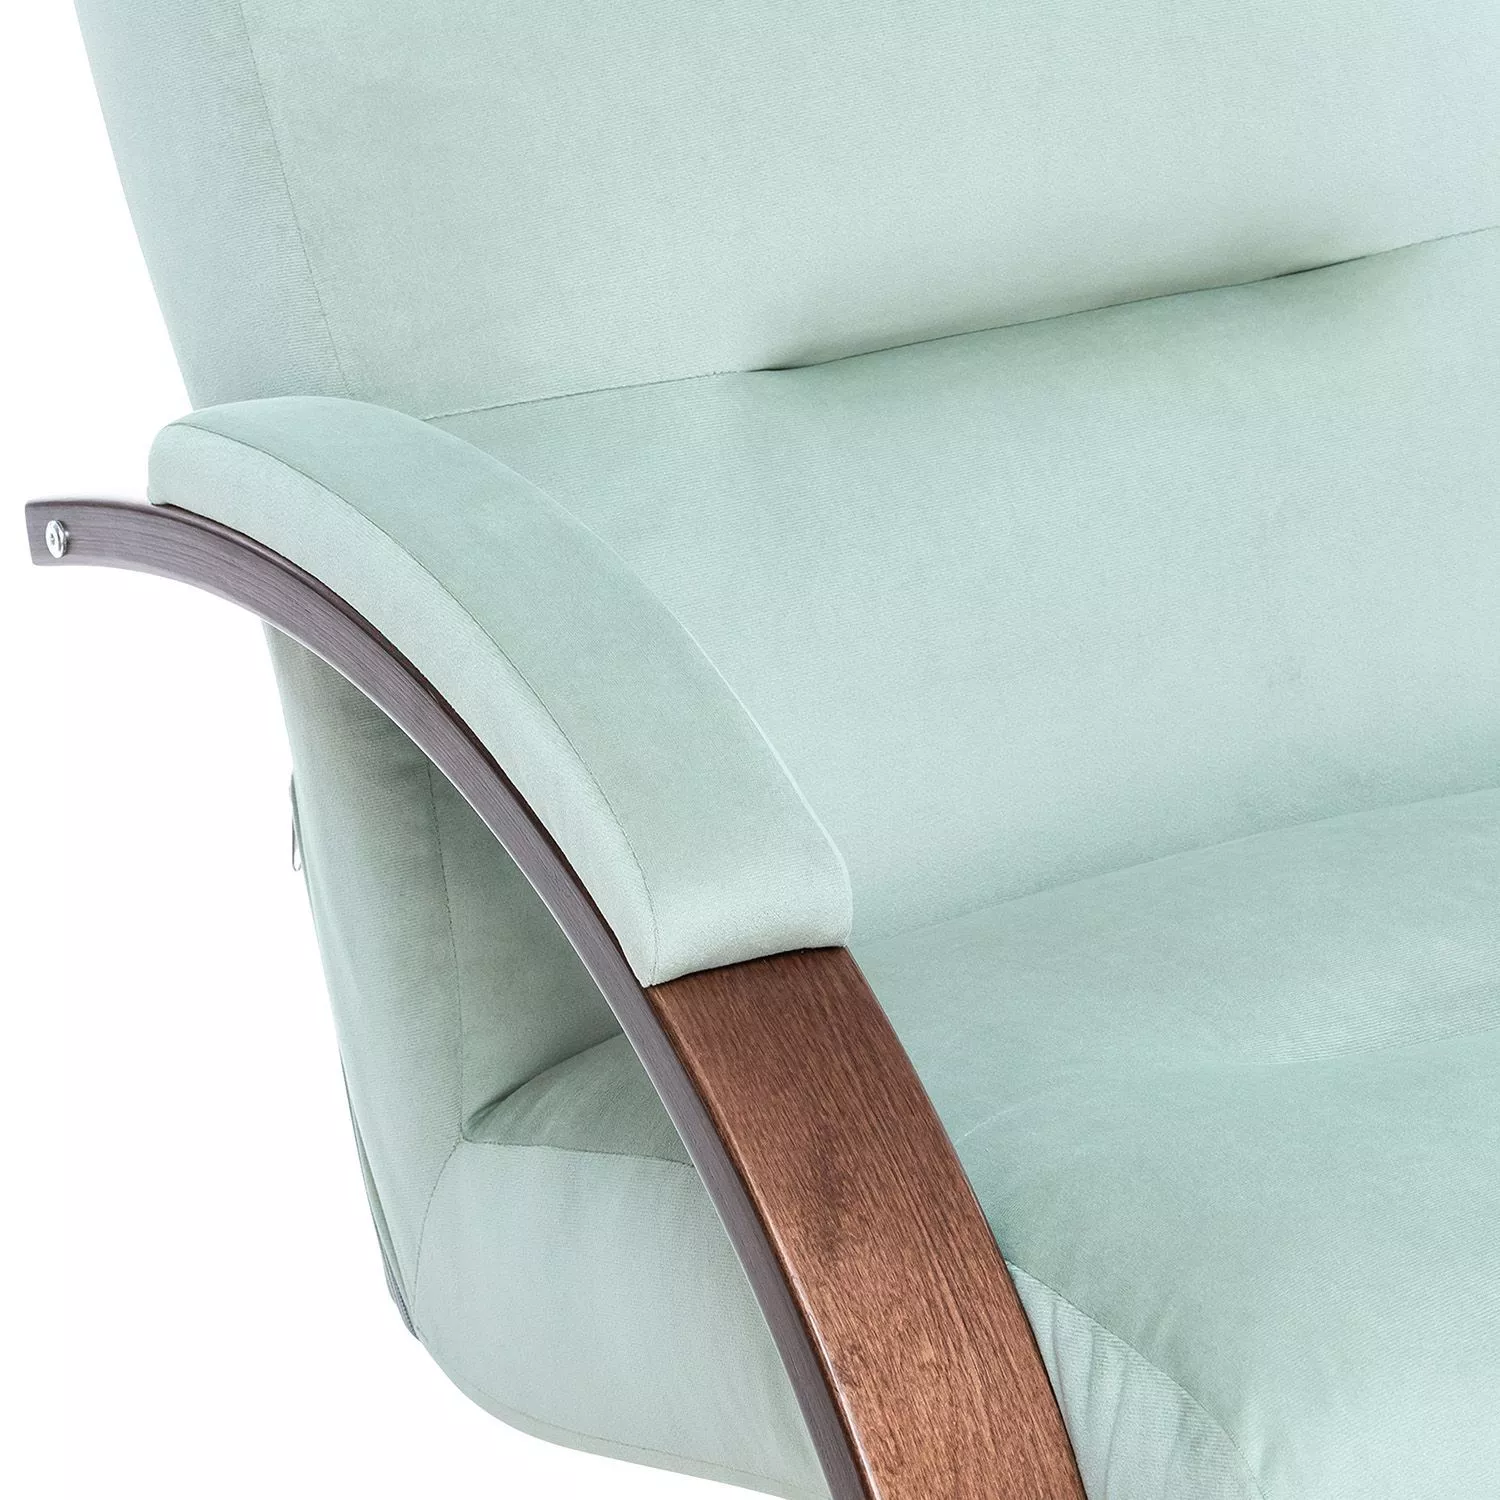 Кресло-качалка Leset Милано V14 бирюзовый / Орех текстура